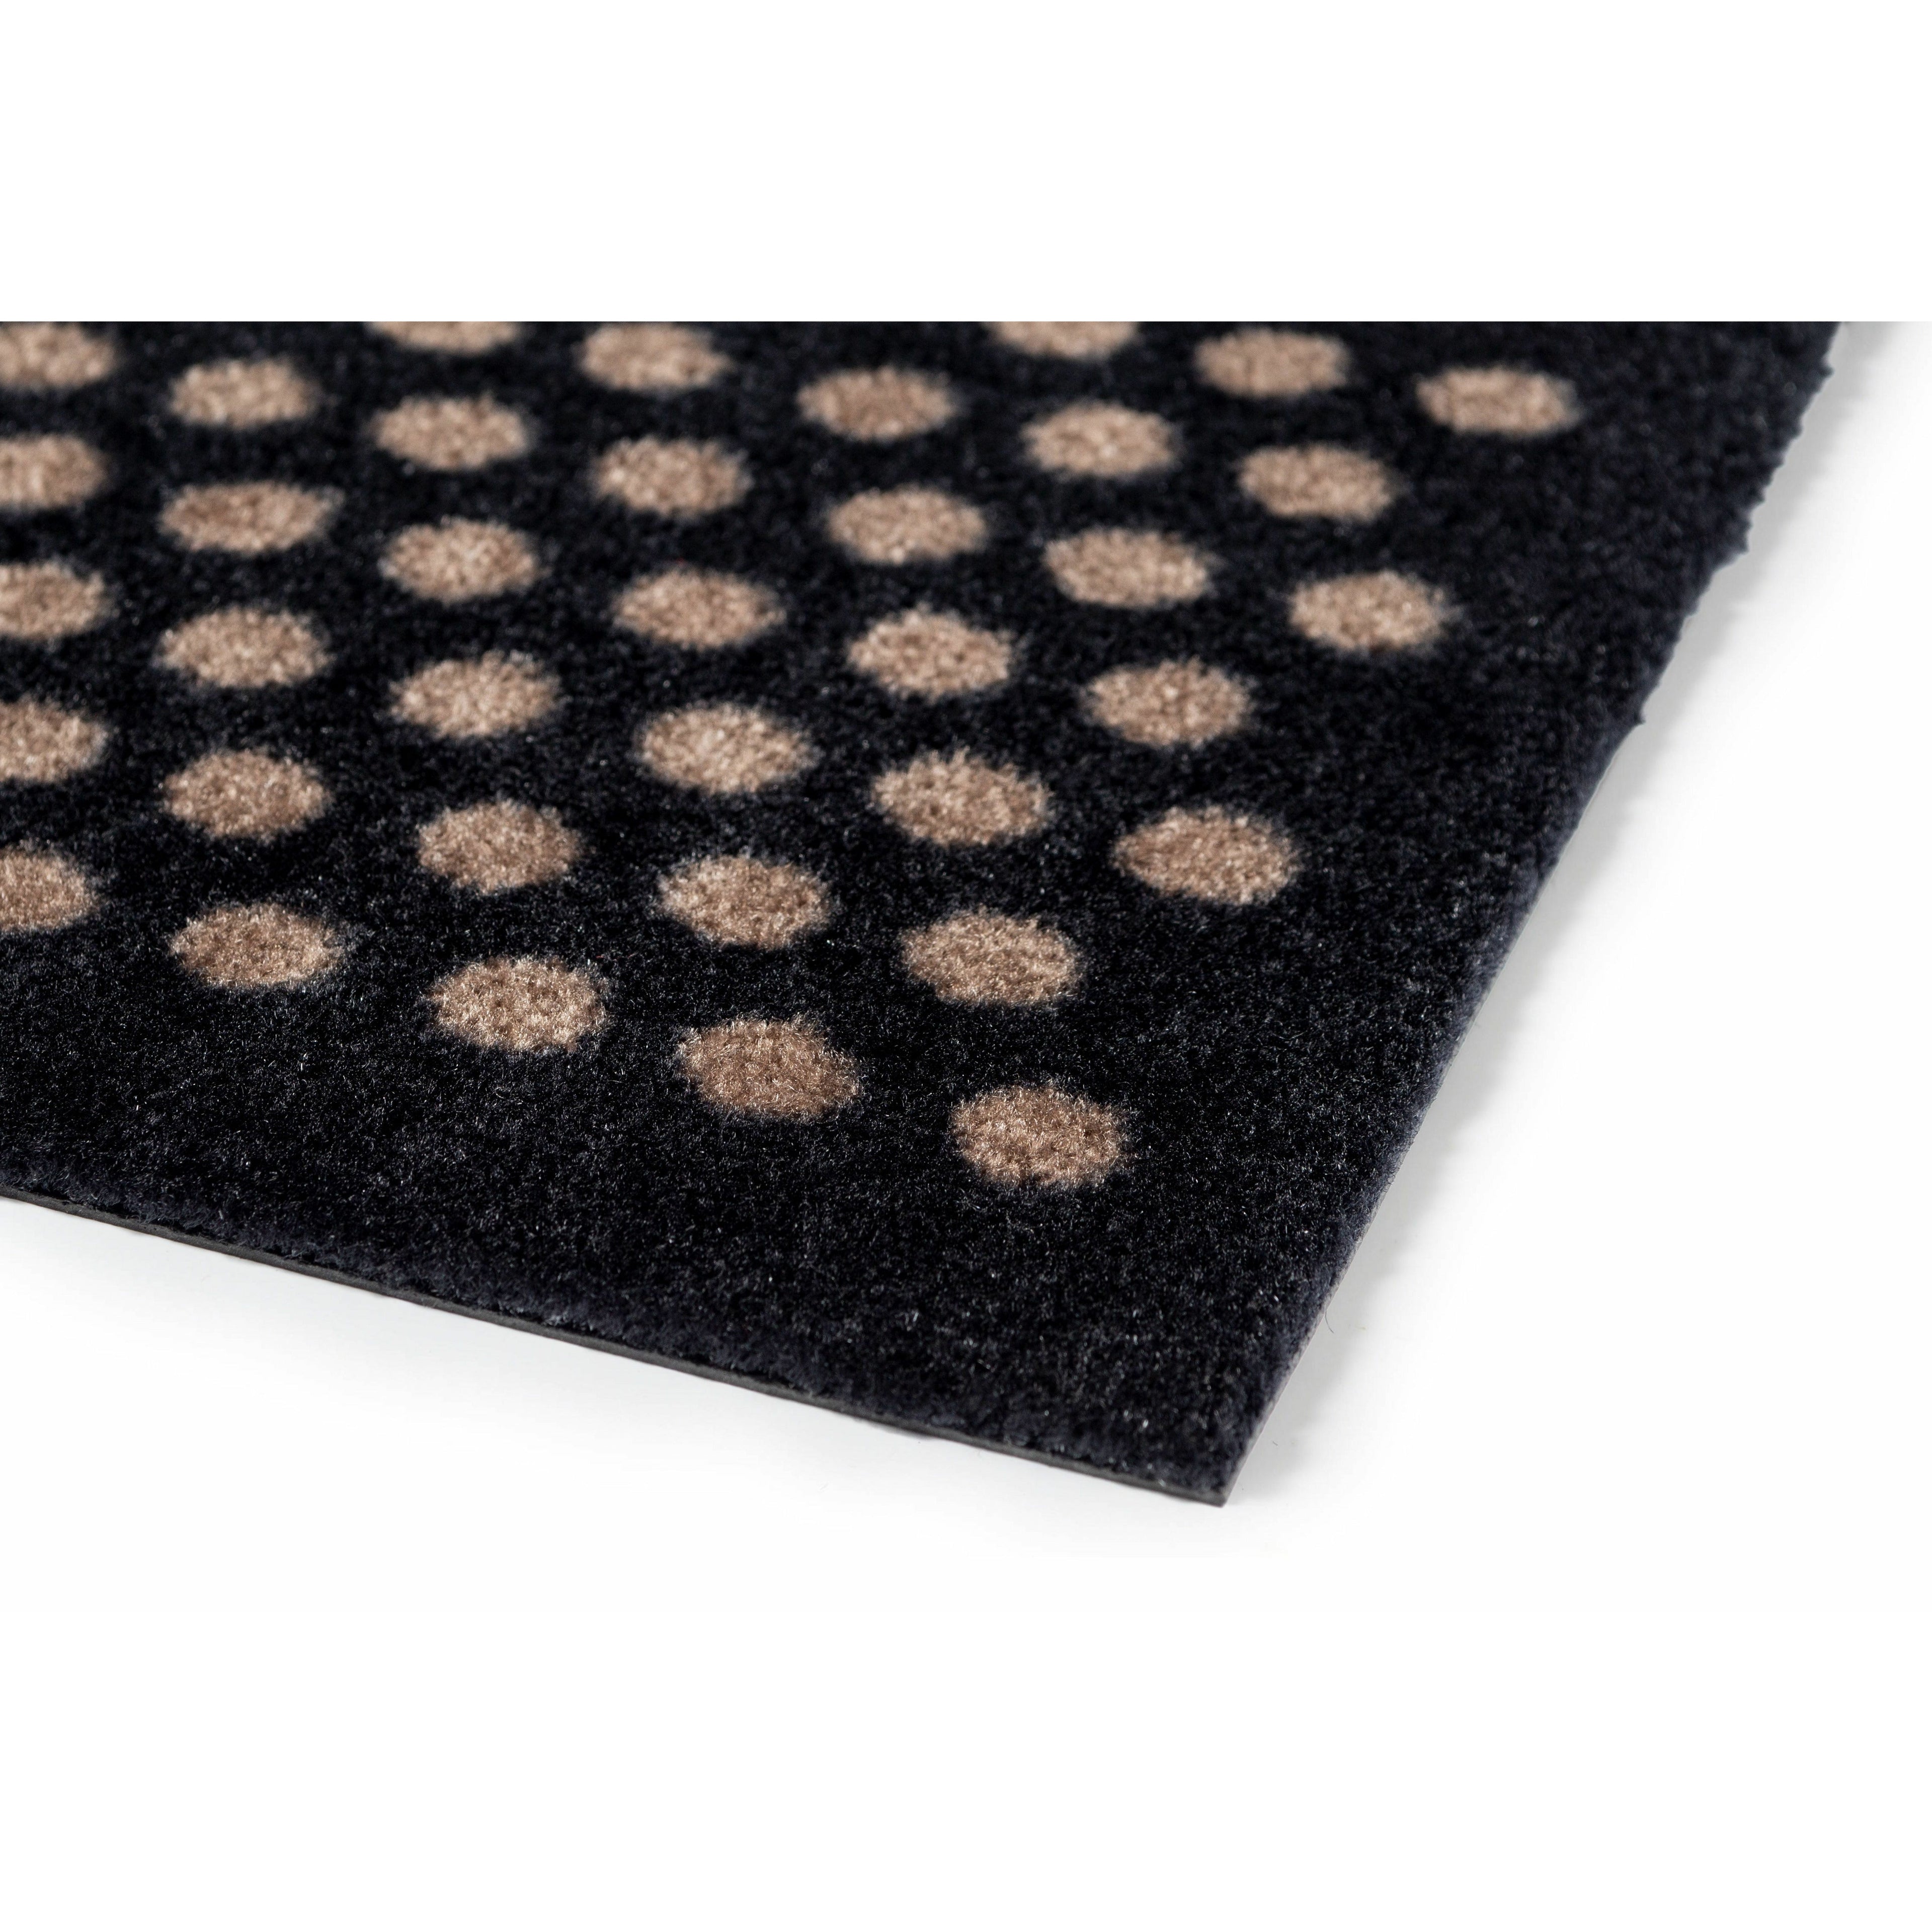 Bodenmatte 90 x 130 cm - Punkt/schwarzer Sand